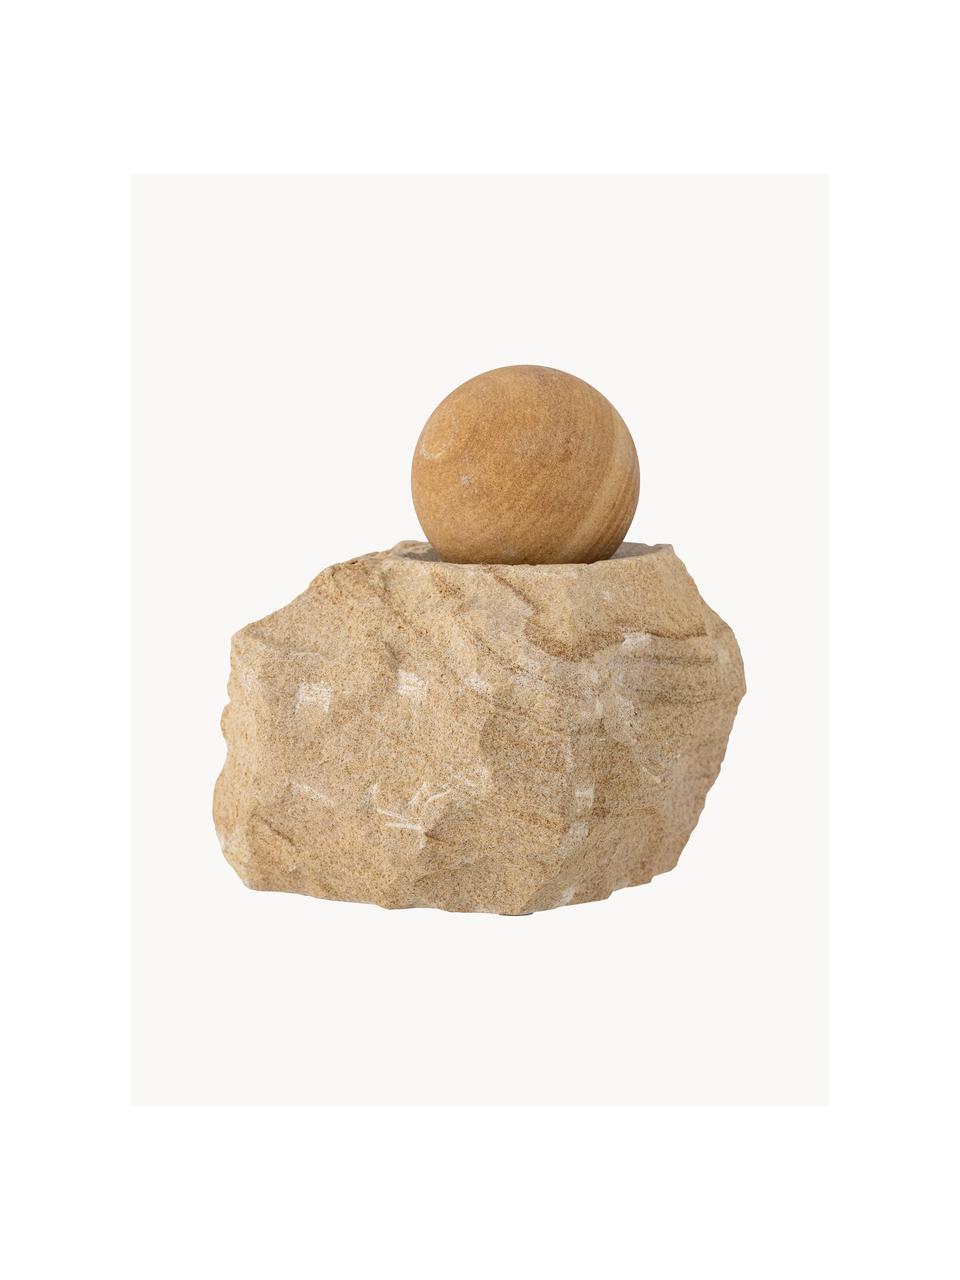 Deko-Objekt Leek aus Sandstein, Sandstein, Beige, B 12 x H 14 cm